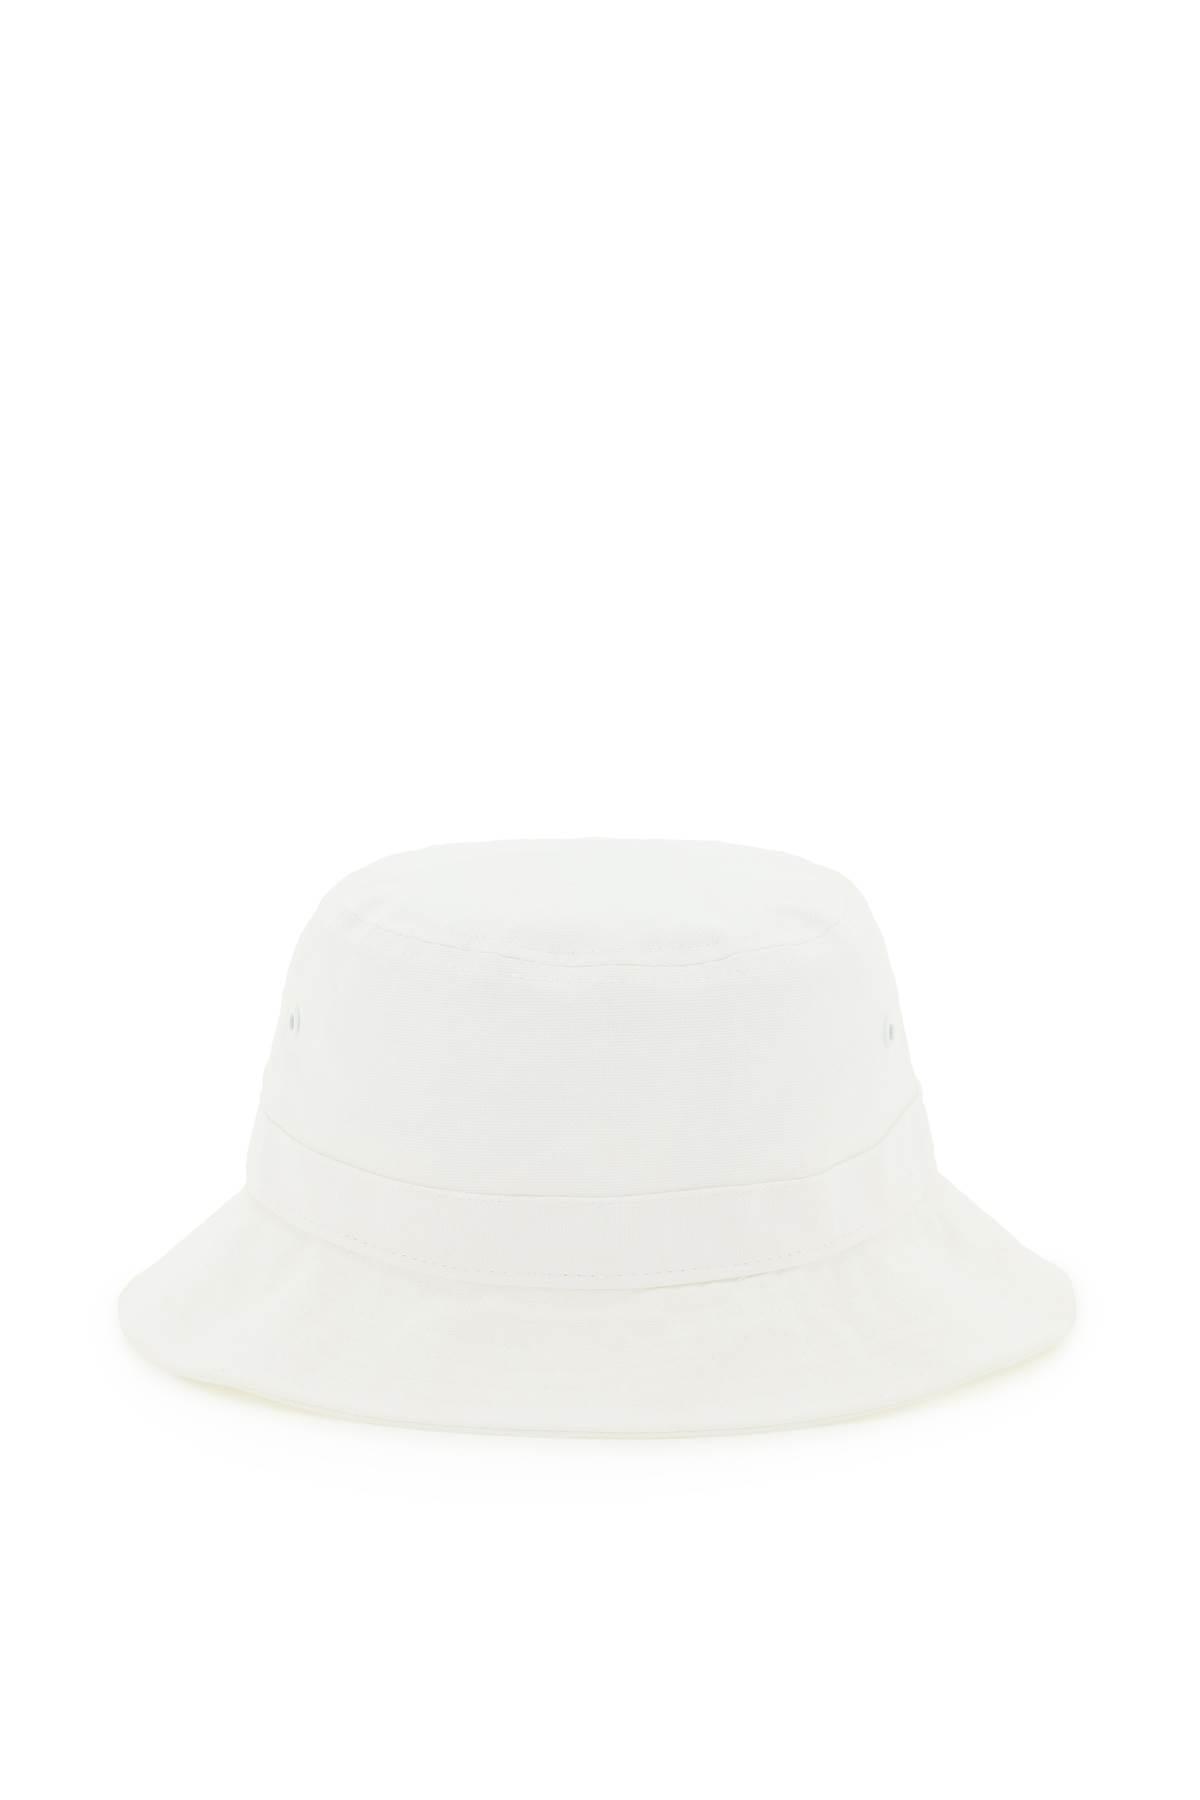 Carhartt WIP Logo Bucket Hat in White for Men | Lyst